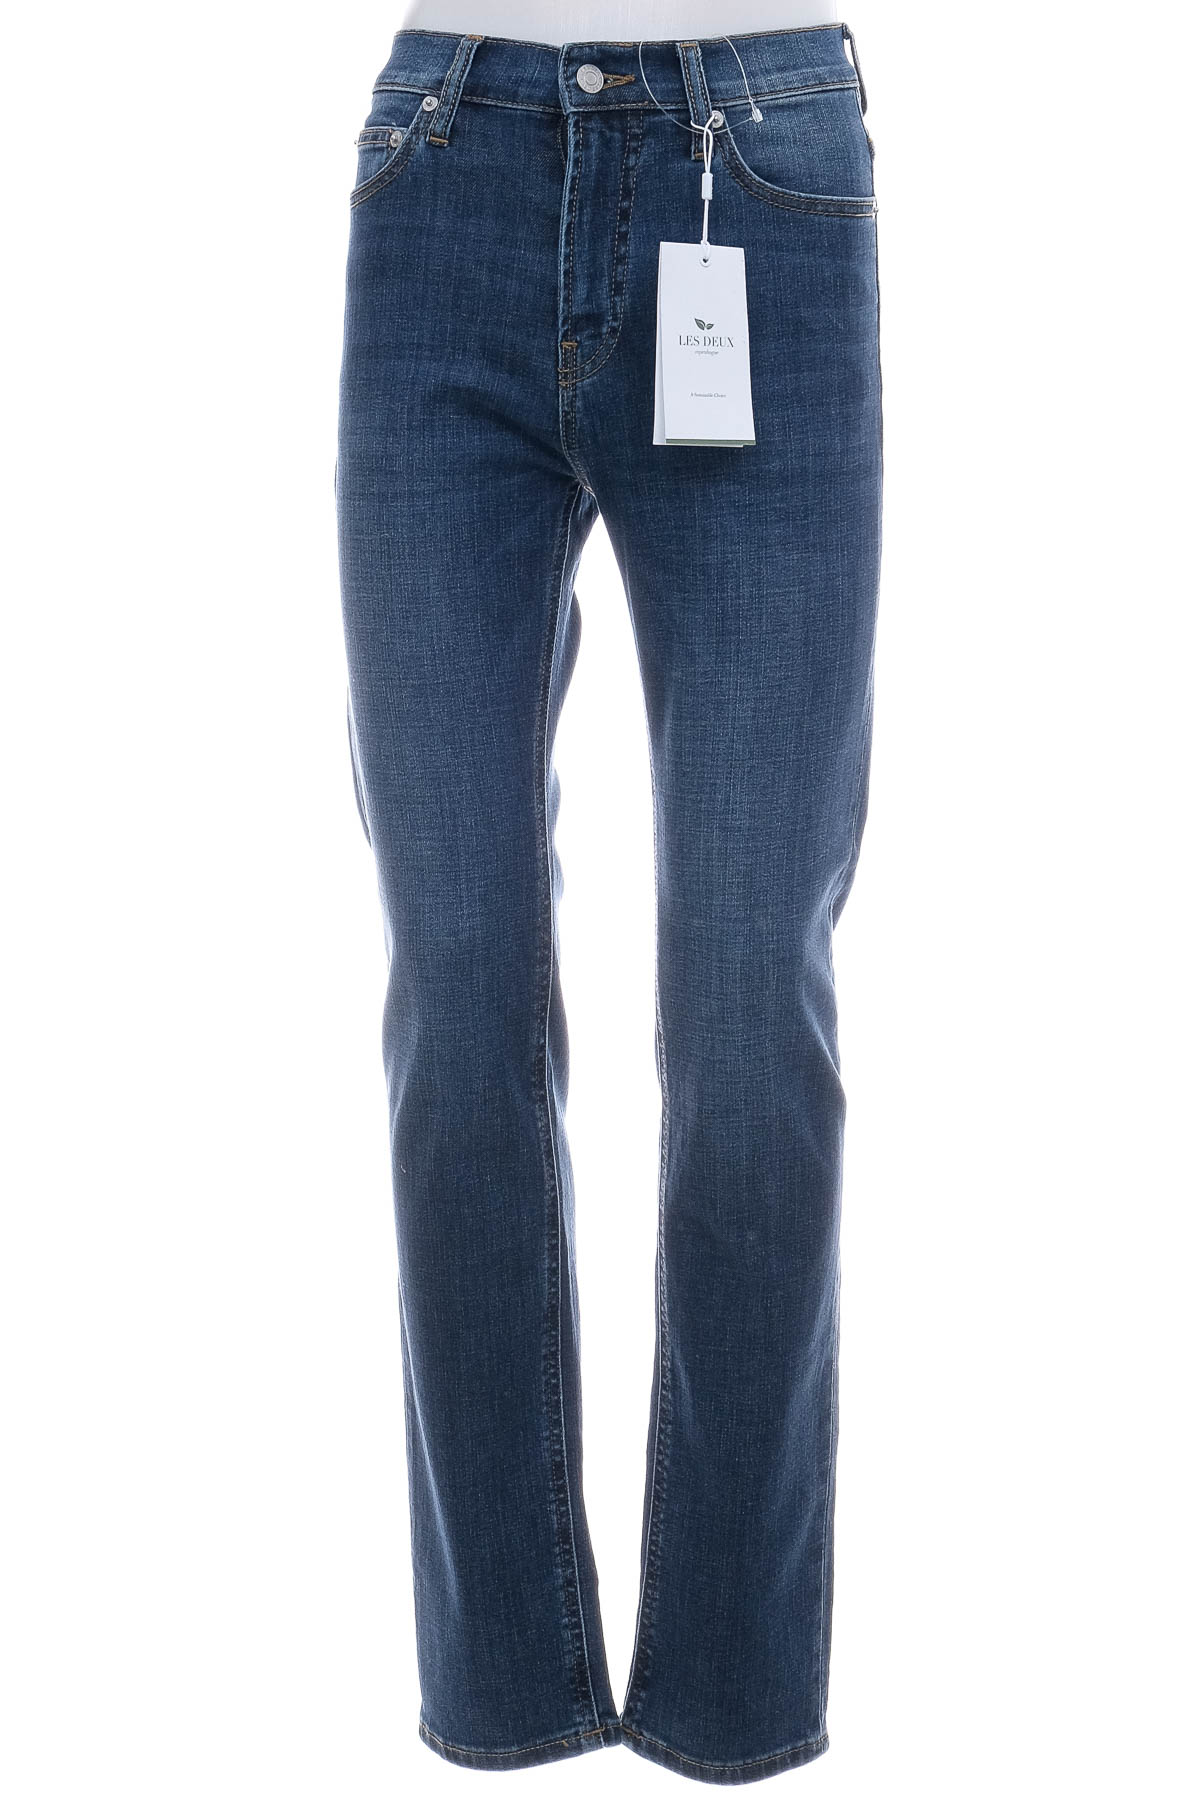 Men's jeans - LES DEUX - 0